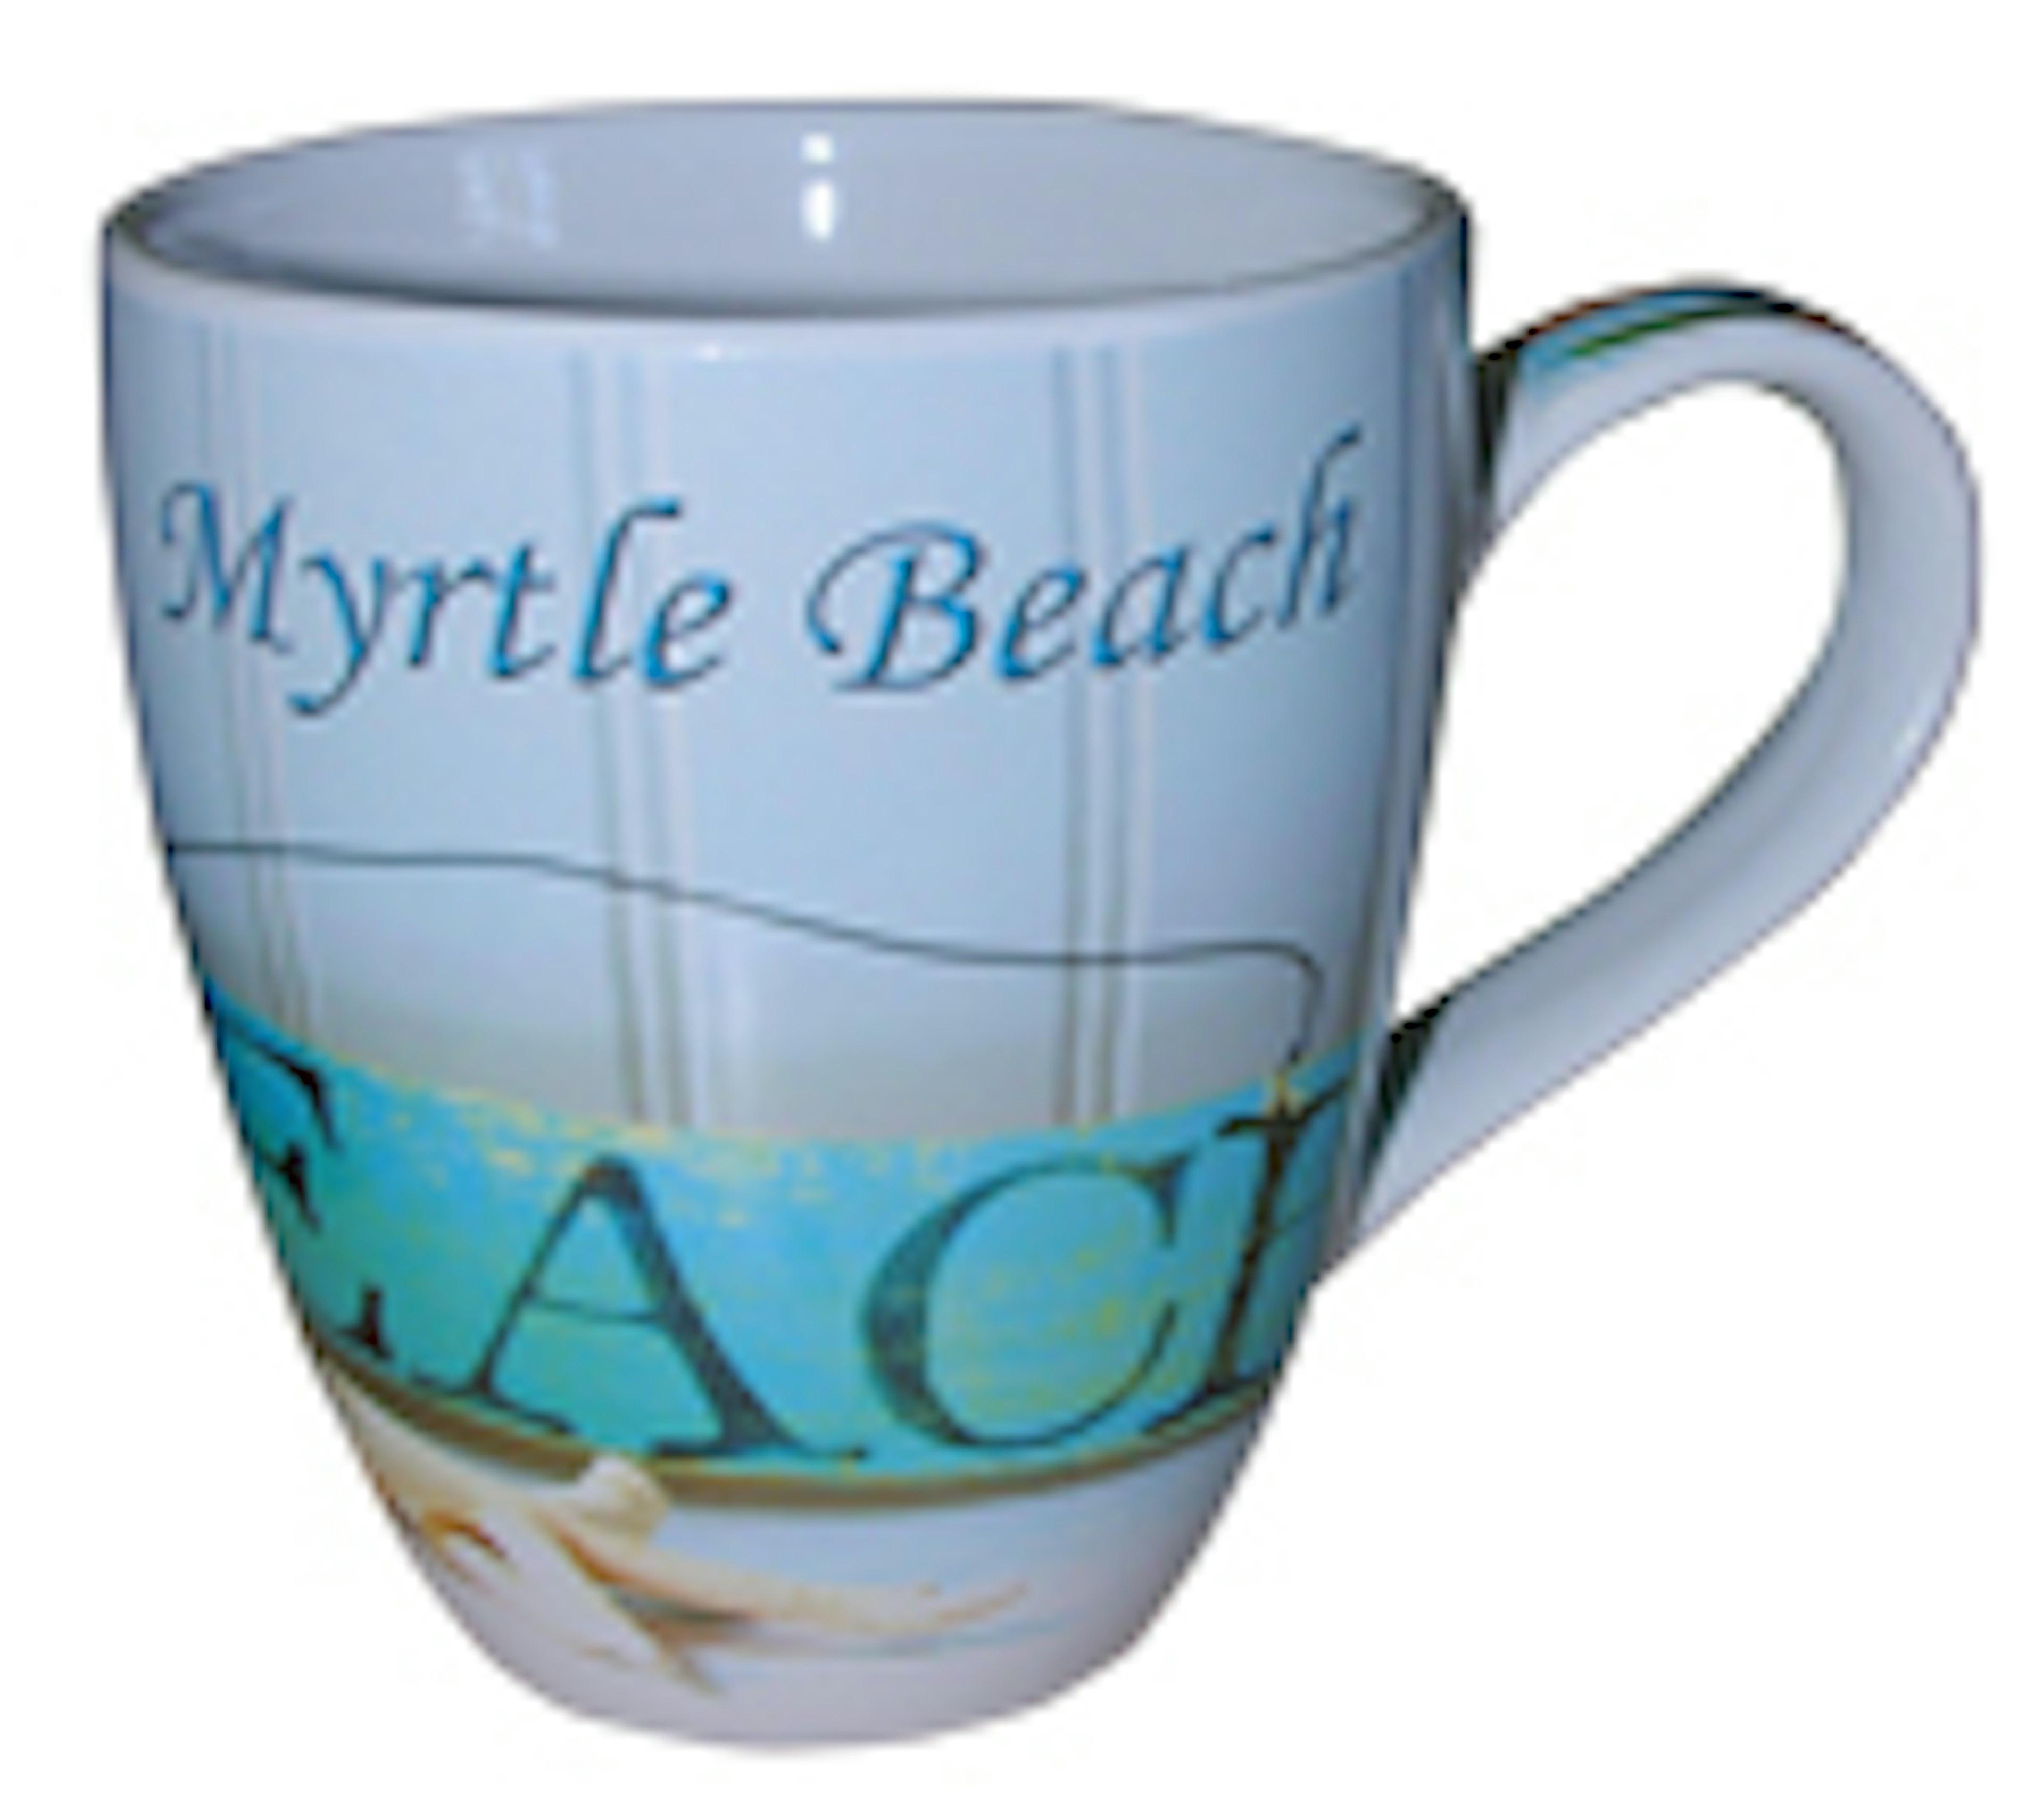 $2.49 Each Myrtle Beach Coffee Mug w/ Spoon